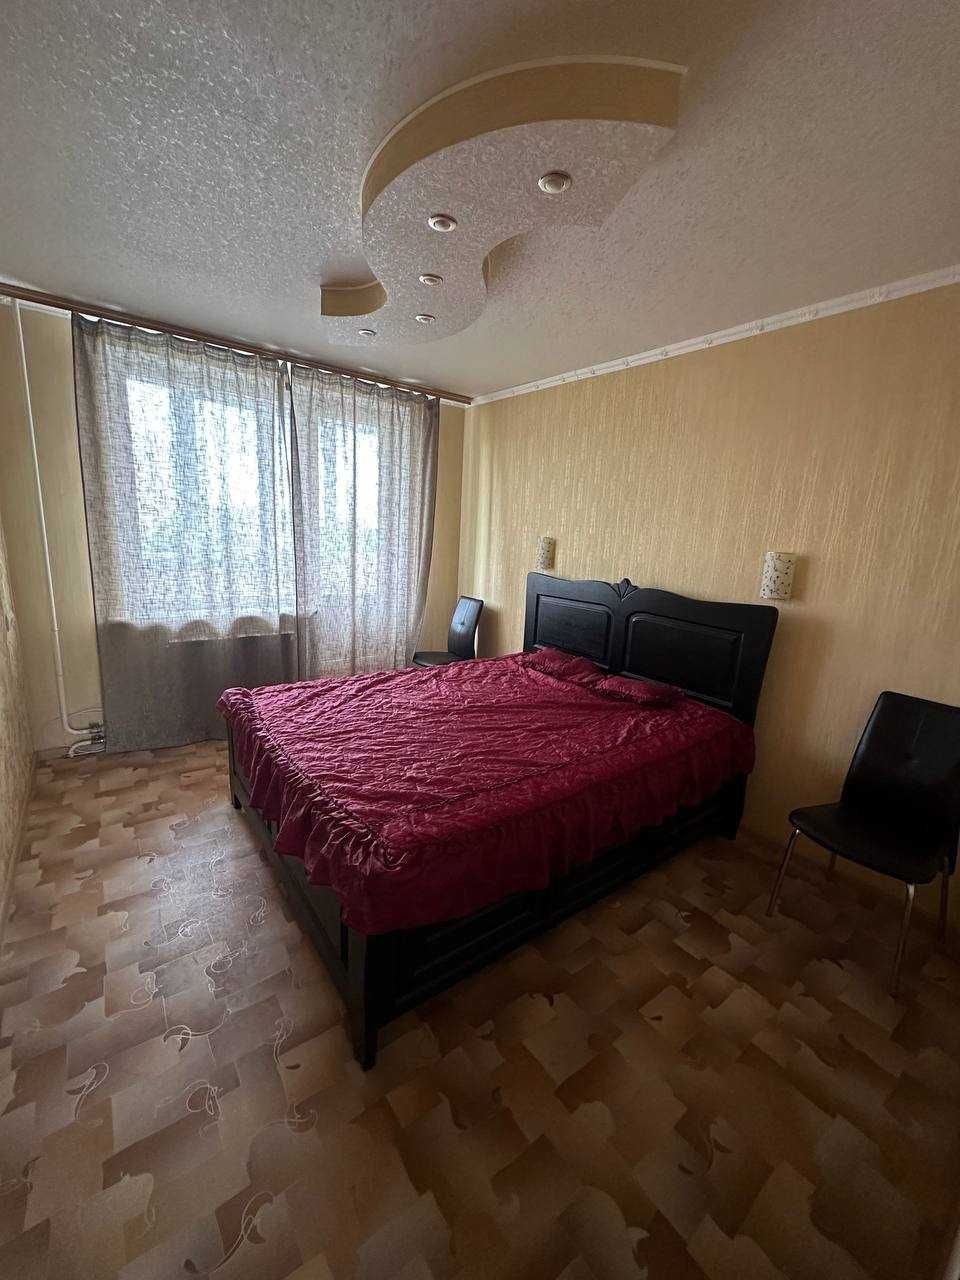 Сдам 3 комнатную квартиру на Алексеевке, пр.Победы,64.